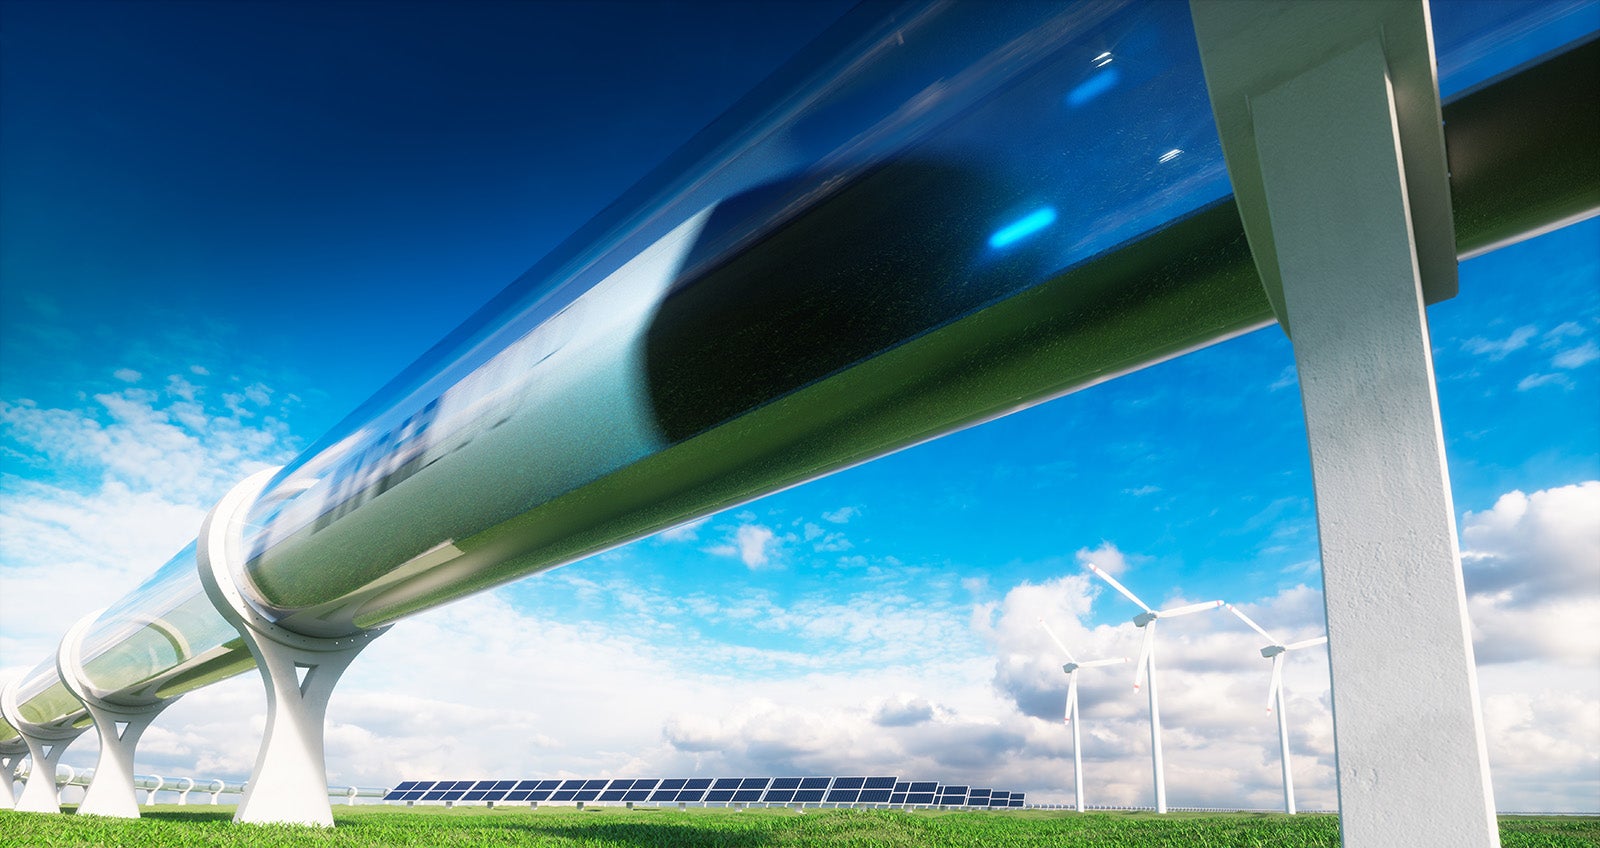 Virgin Hyperloop concept image